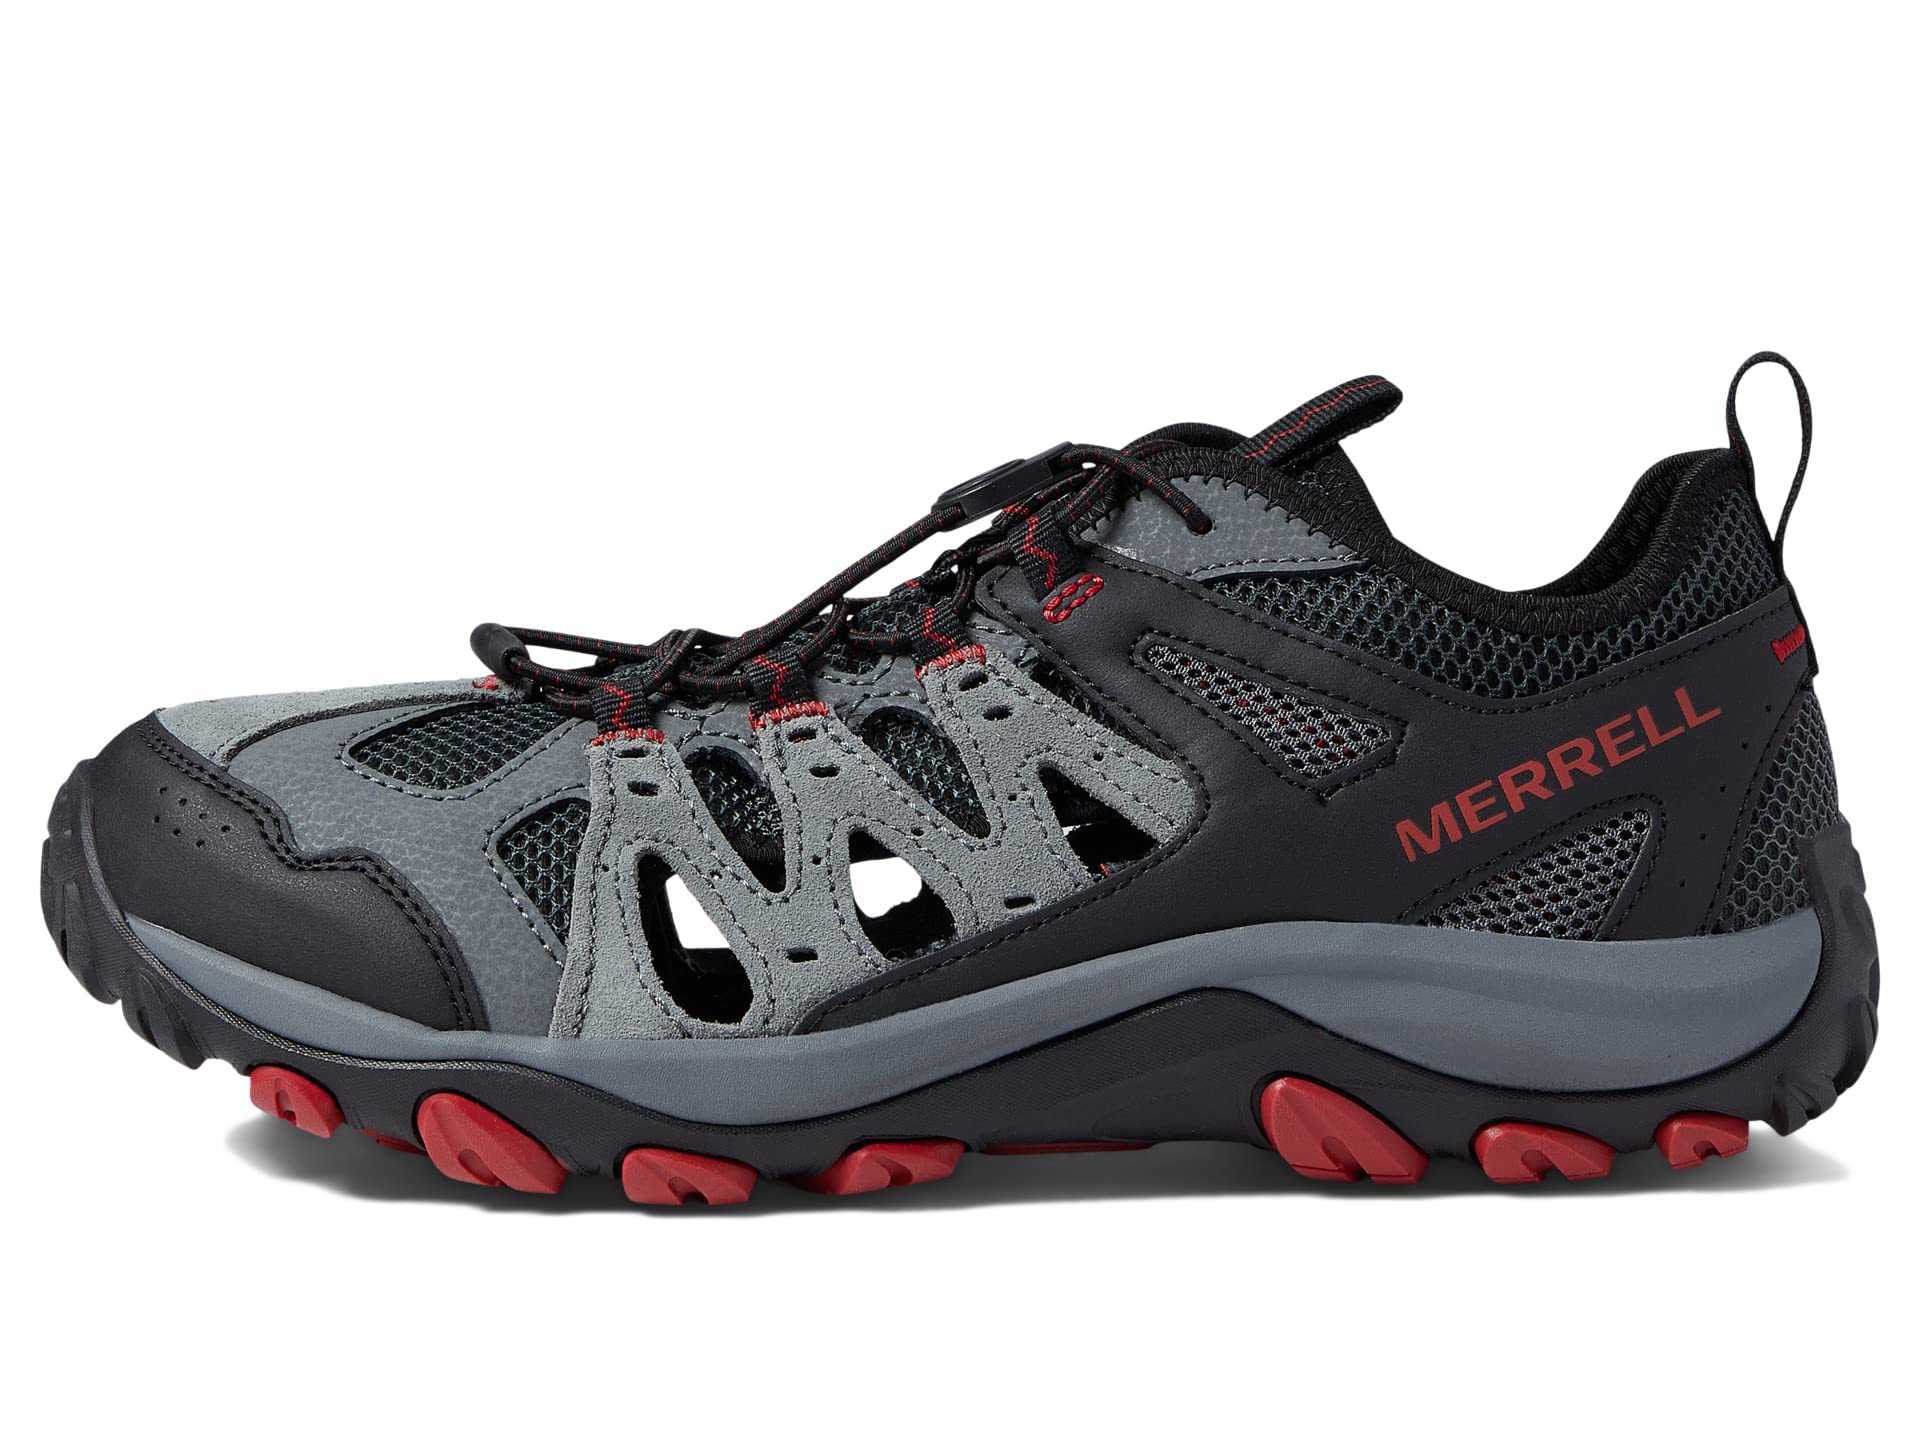 Merrell Men's, Accentor 3 Sieve Hiking Sandal